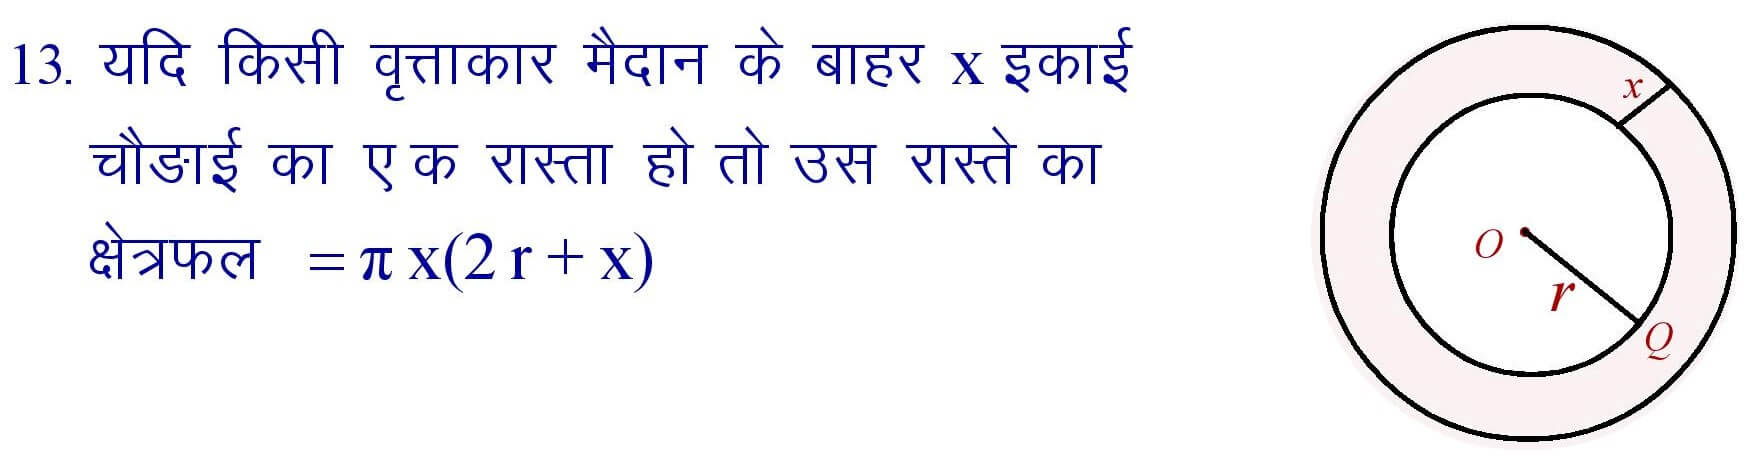 Circle Formula in Hindi